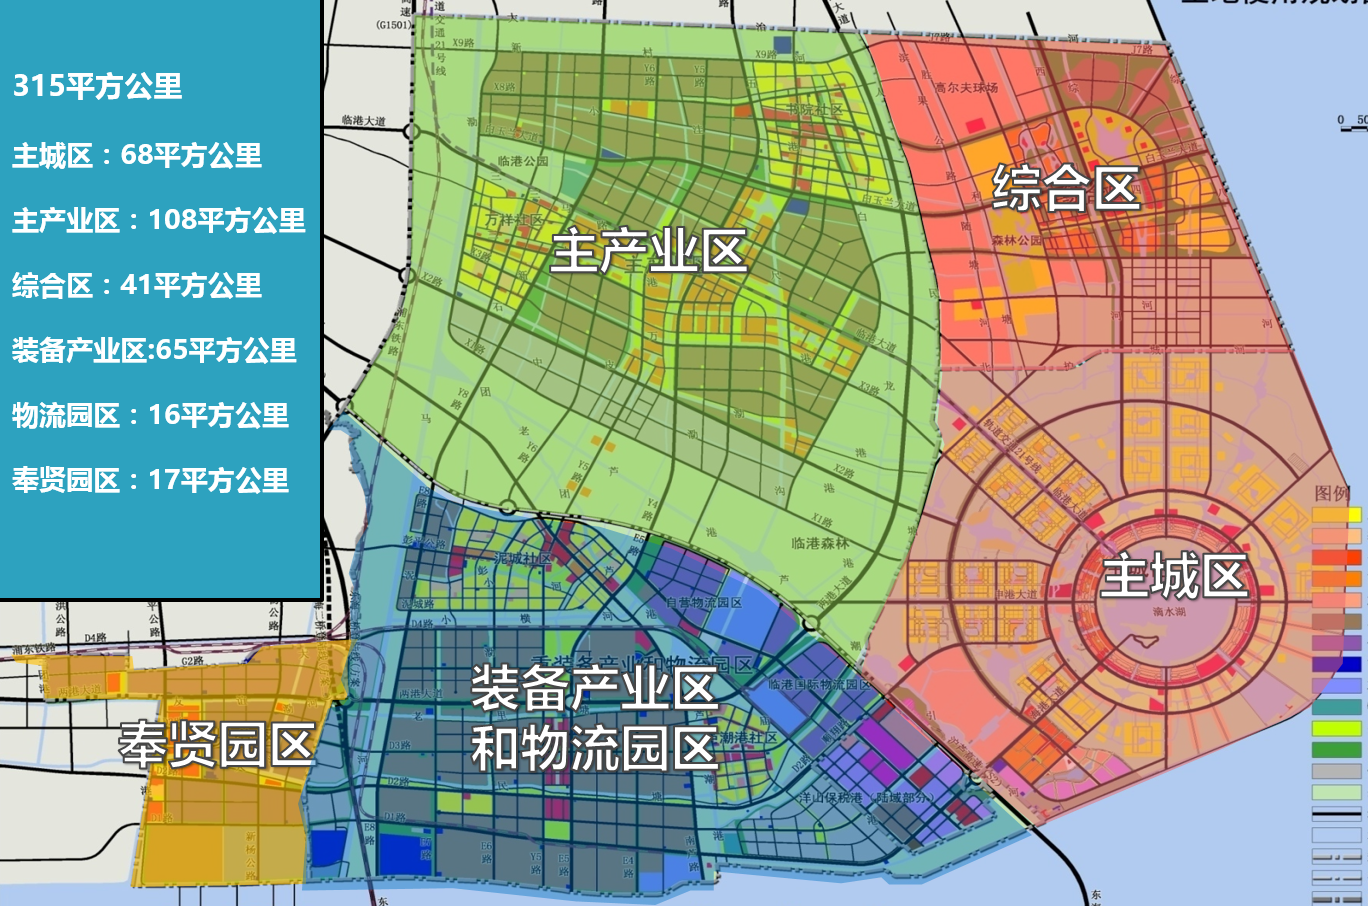 上海临港新城未来的发展前景如何5年内会有大变化嘛希望有独特的见解